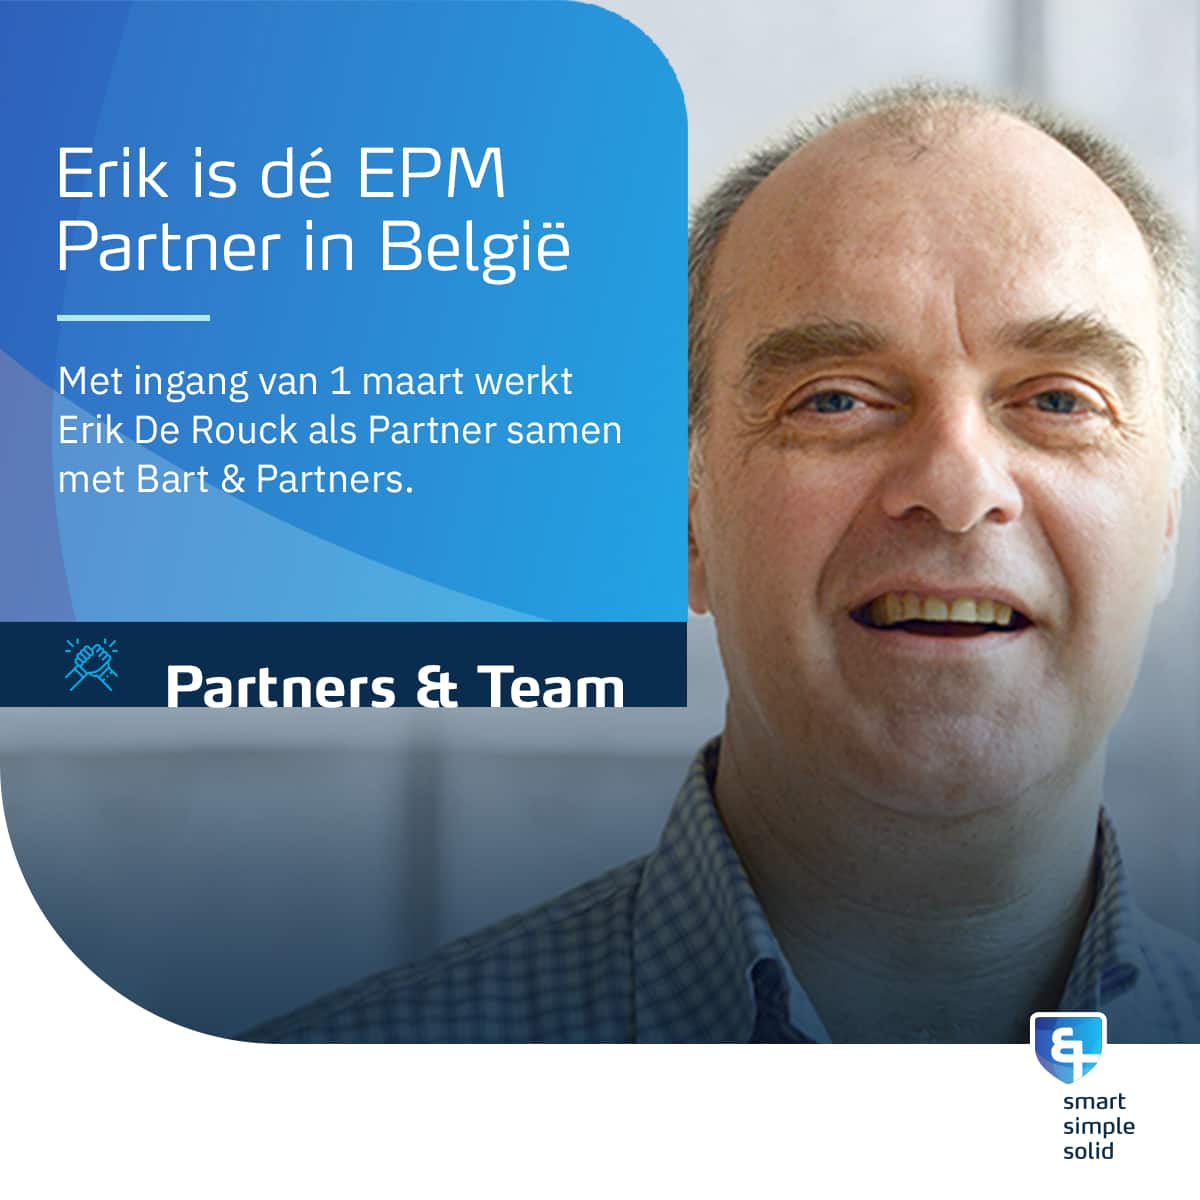 Erik is the EPM Partner in Belgium